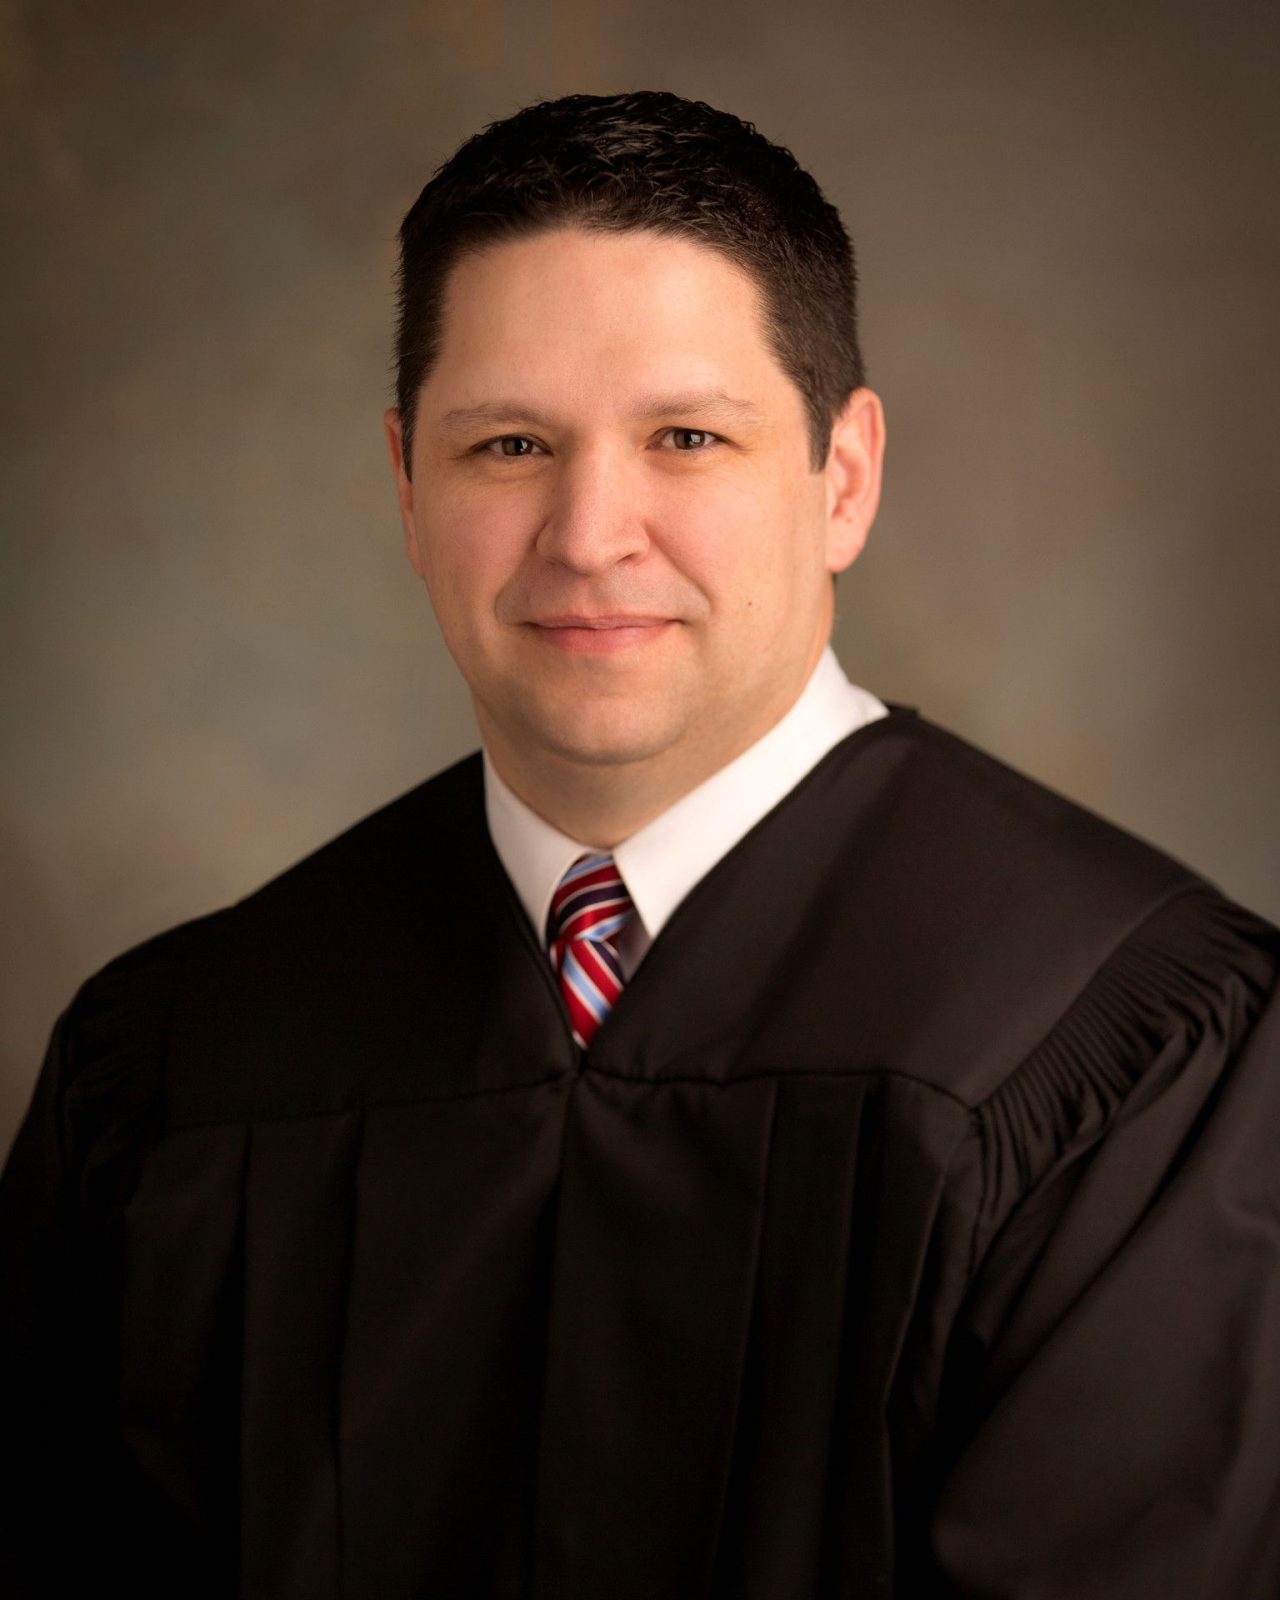  Judge Ryan B. Evershed